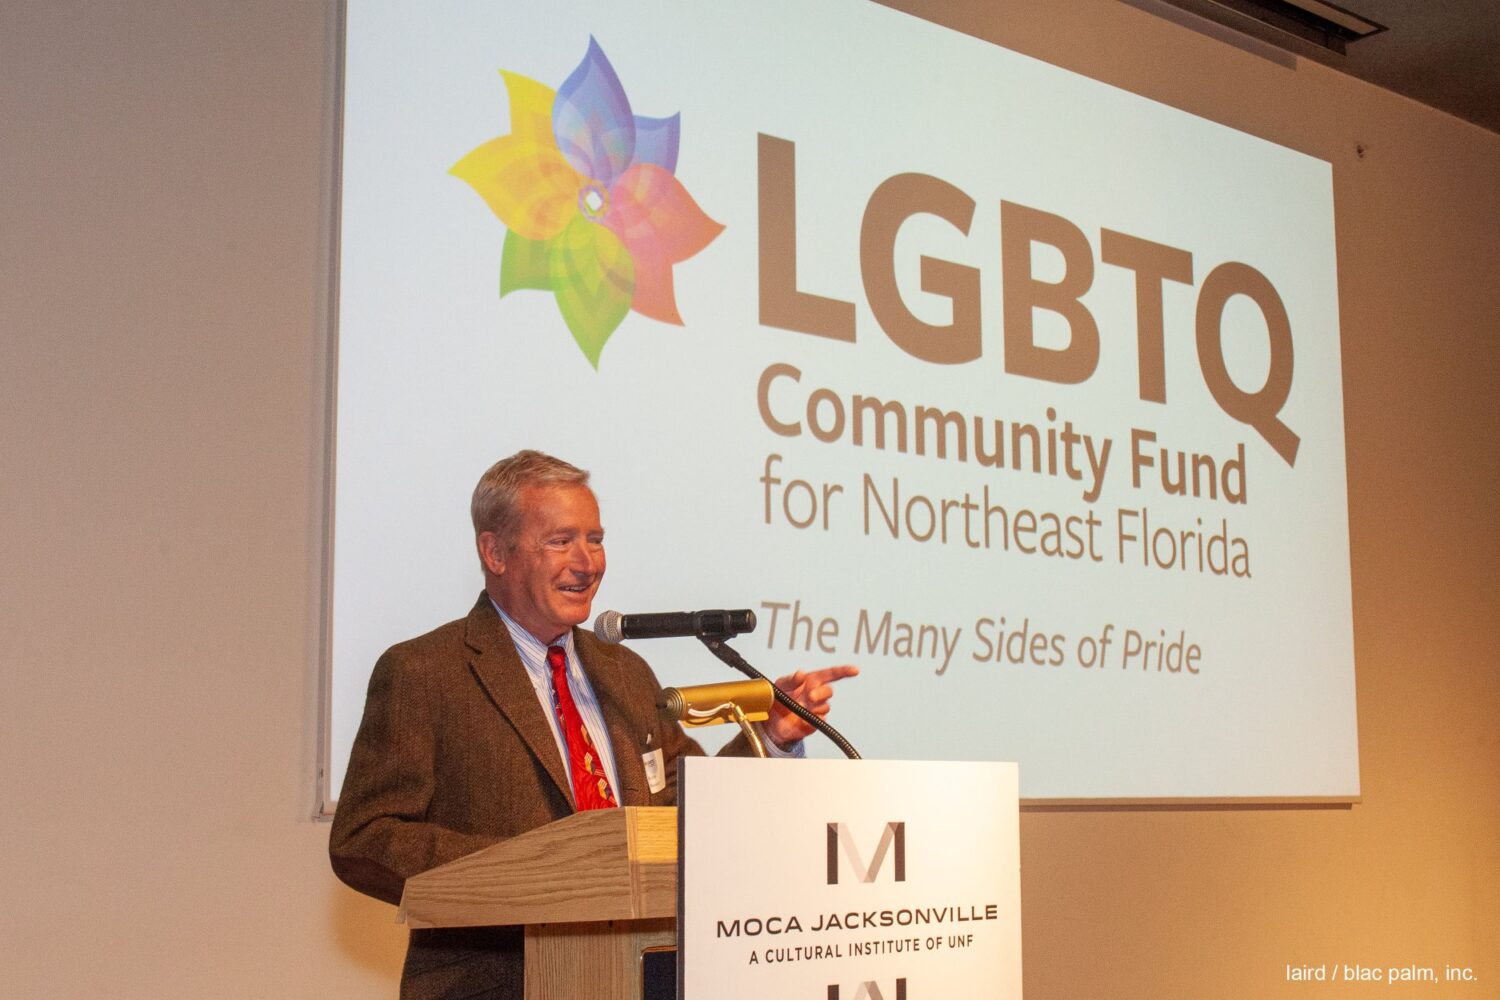 LGBTQ Community Fund